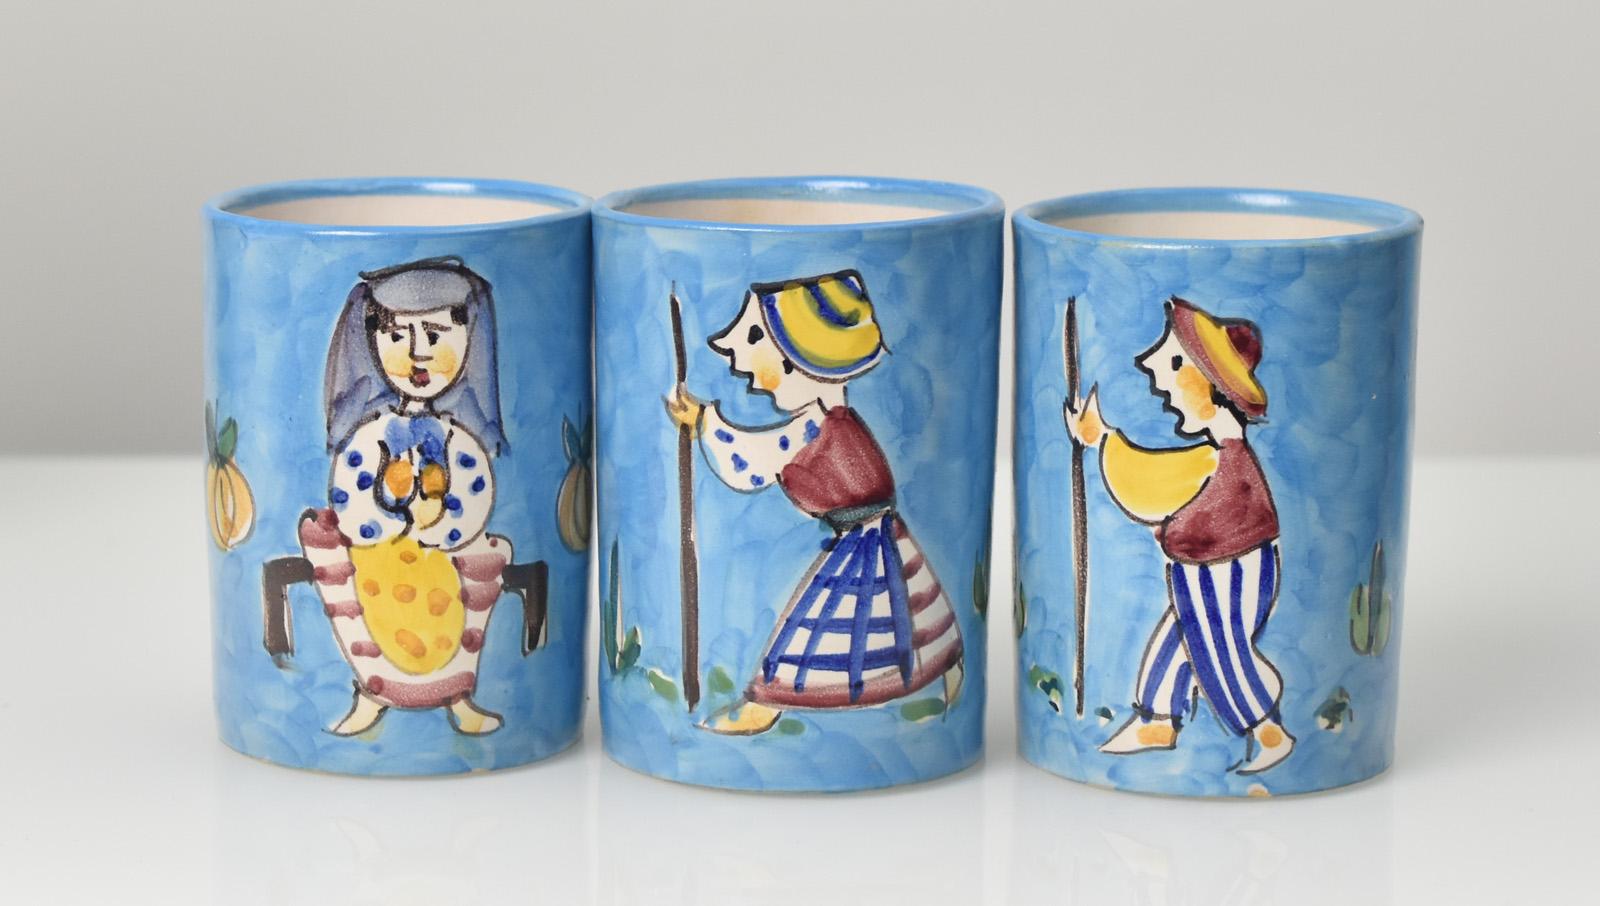 Set de limonade en poterie Mid-Century Modern de Vietri Italy composé d'un pichet, de 6 gobelets et d'une tasse à café assortie. Toutes les pièces sont décorées de scènes de la vie rurale peintes à la main qui rappellent les designs d'Irene